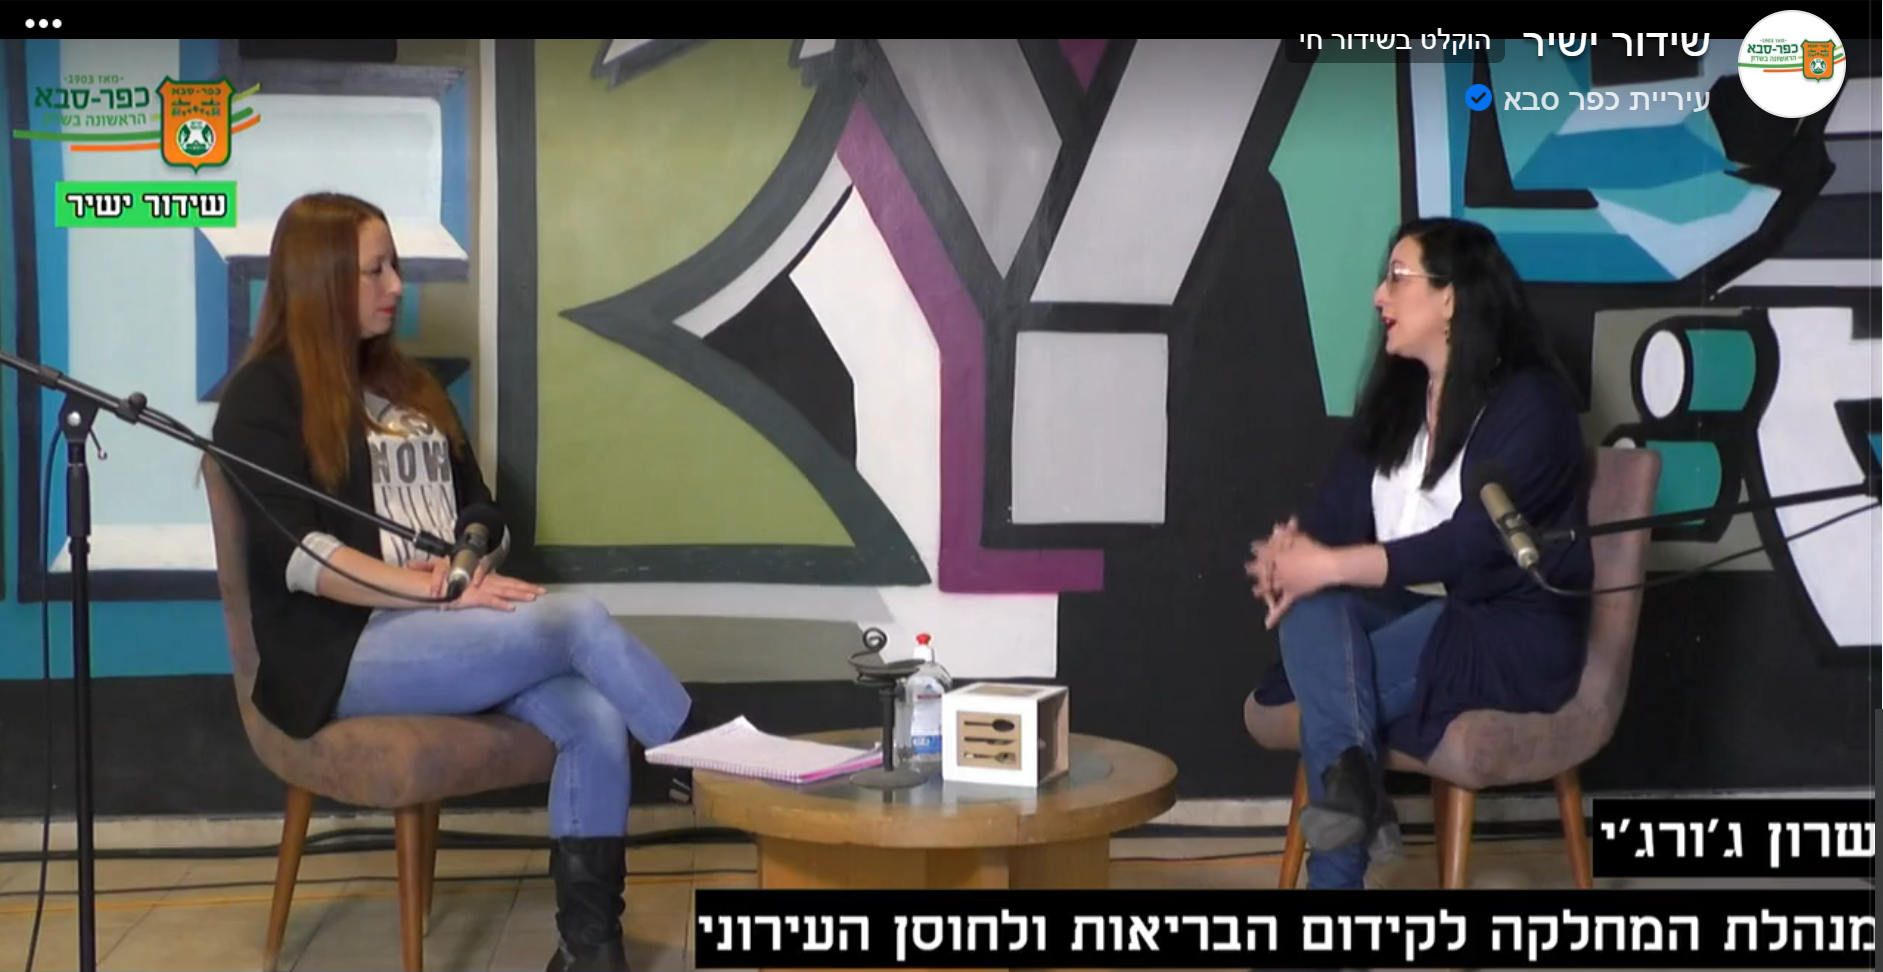 שידור עדכונים ותכניות לתושבים בערוץ "Kfar Saba Live"